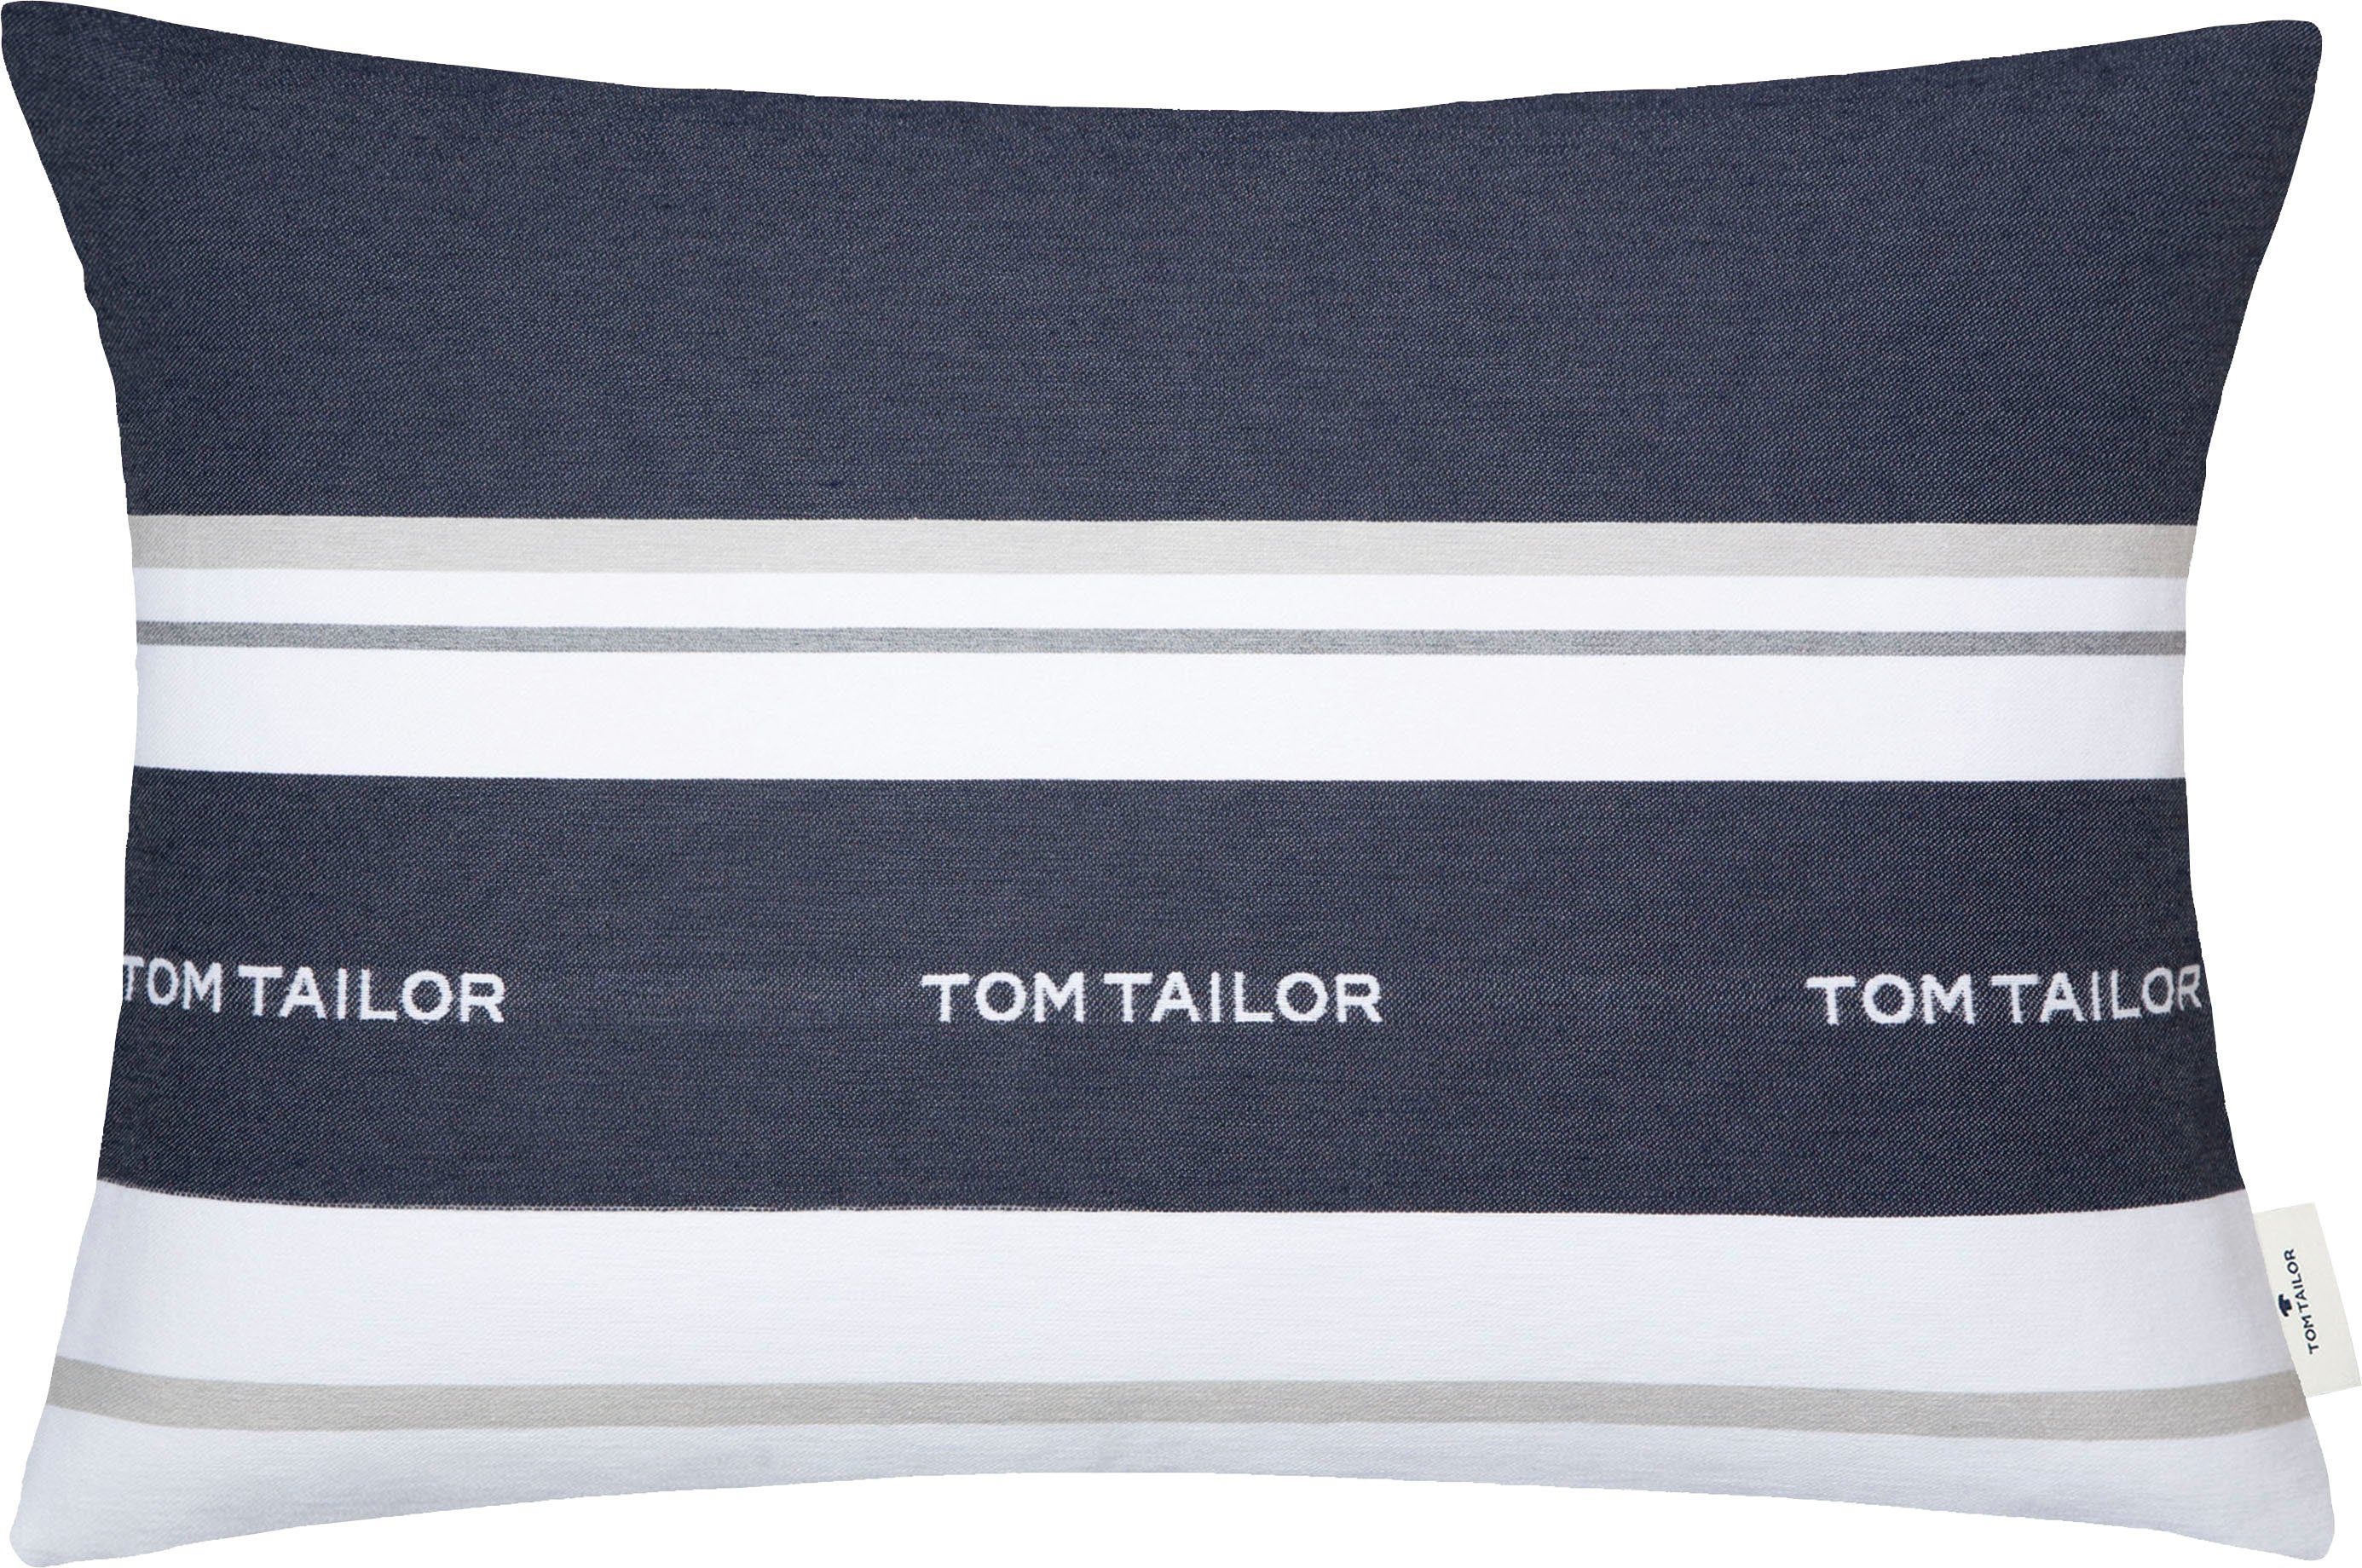 TOM TAILOR HOME Dekokissen Logo, mit eingewebtem Markenlogo, Kissenhülle ohne Füllung, 1 Stück marine/dunkelblau/blau/nachtblau